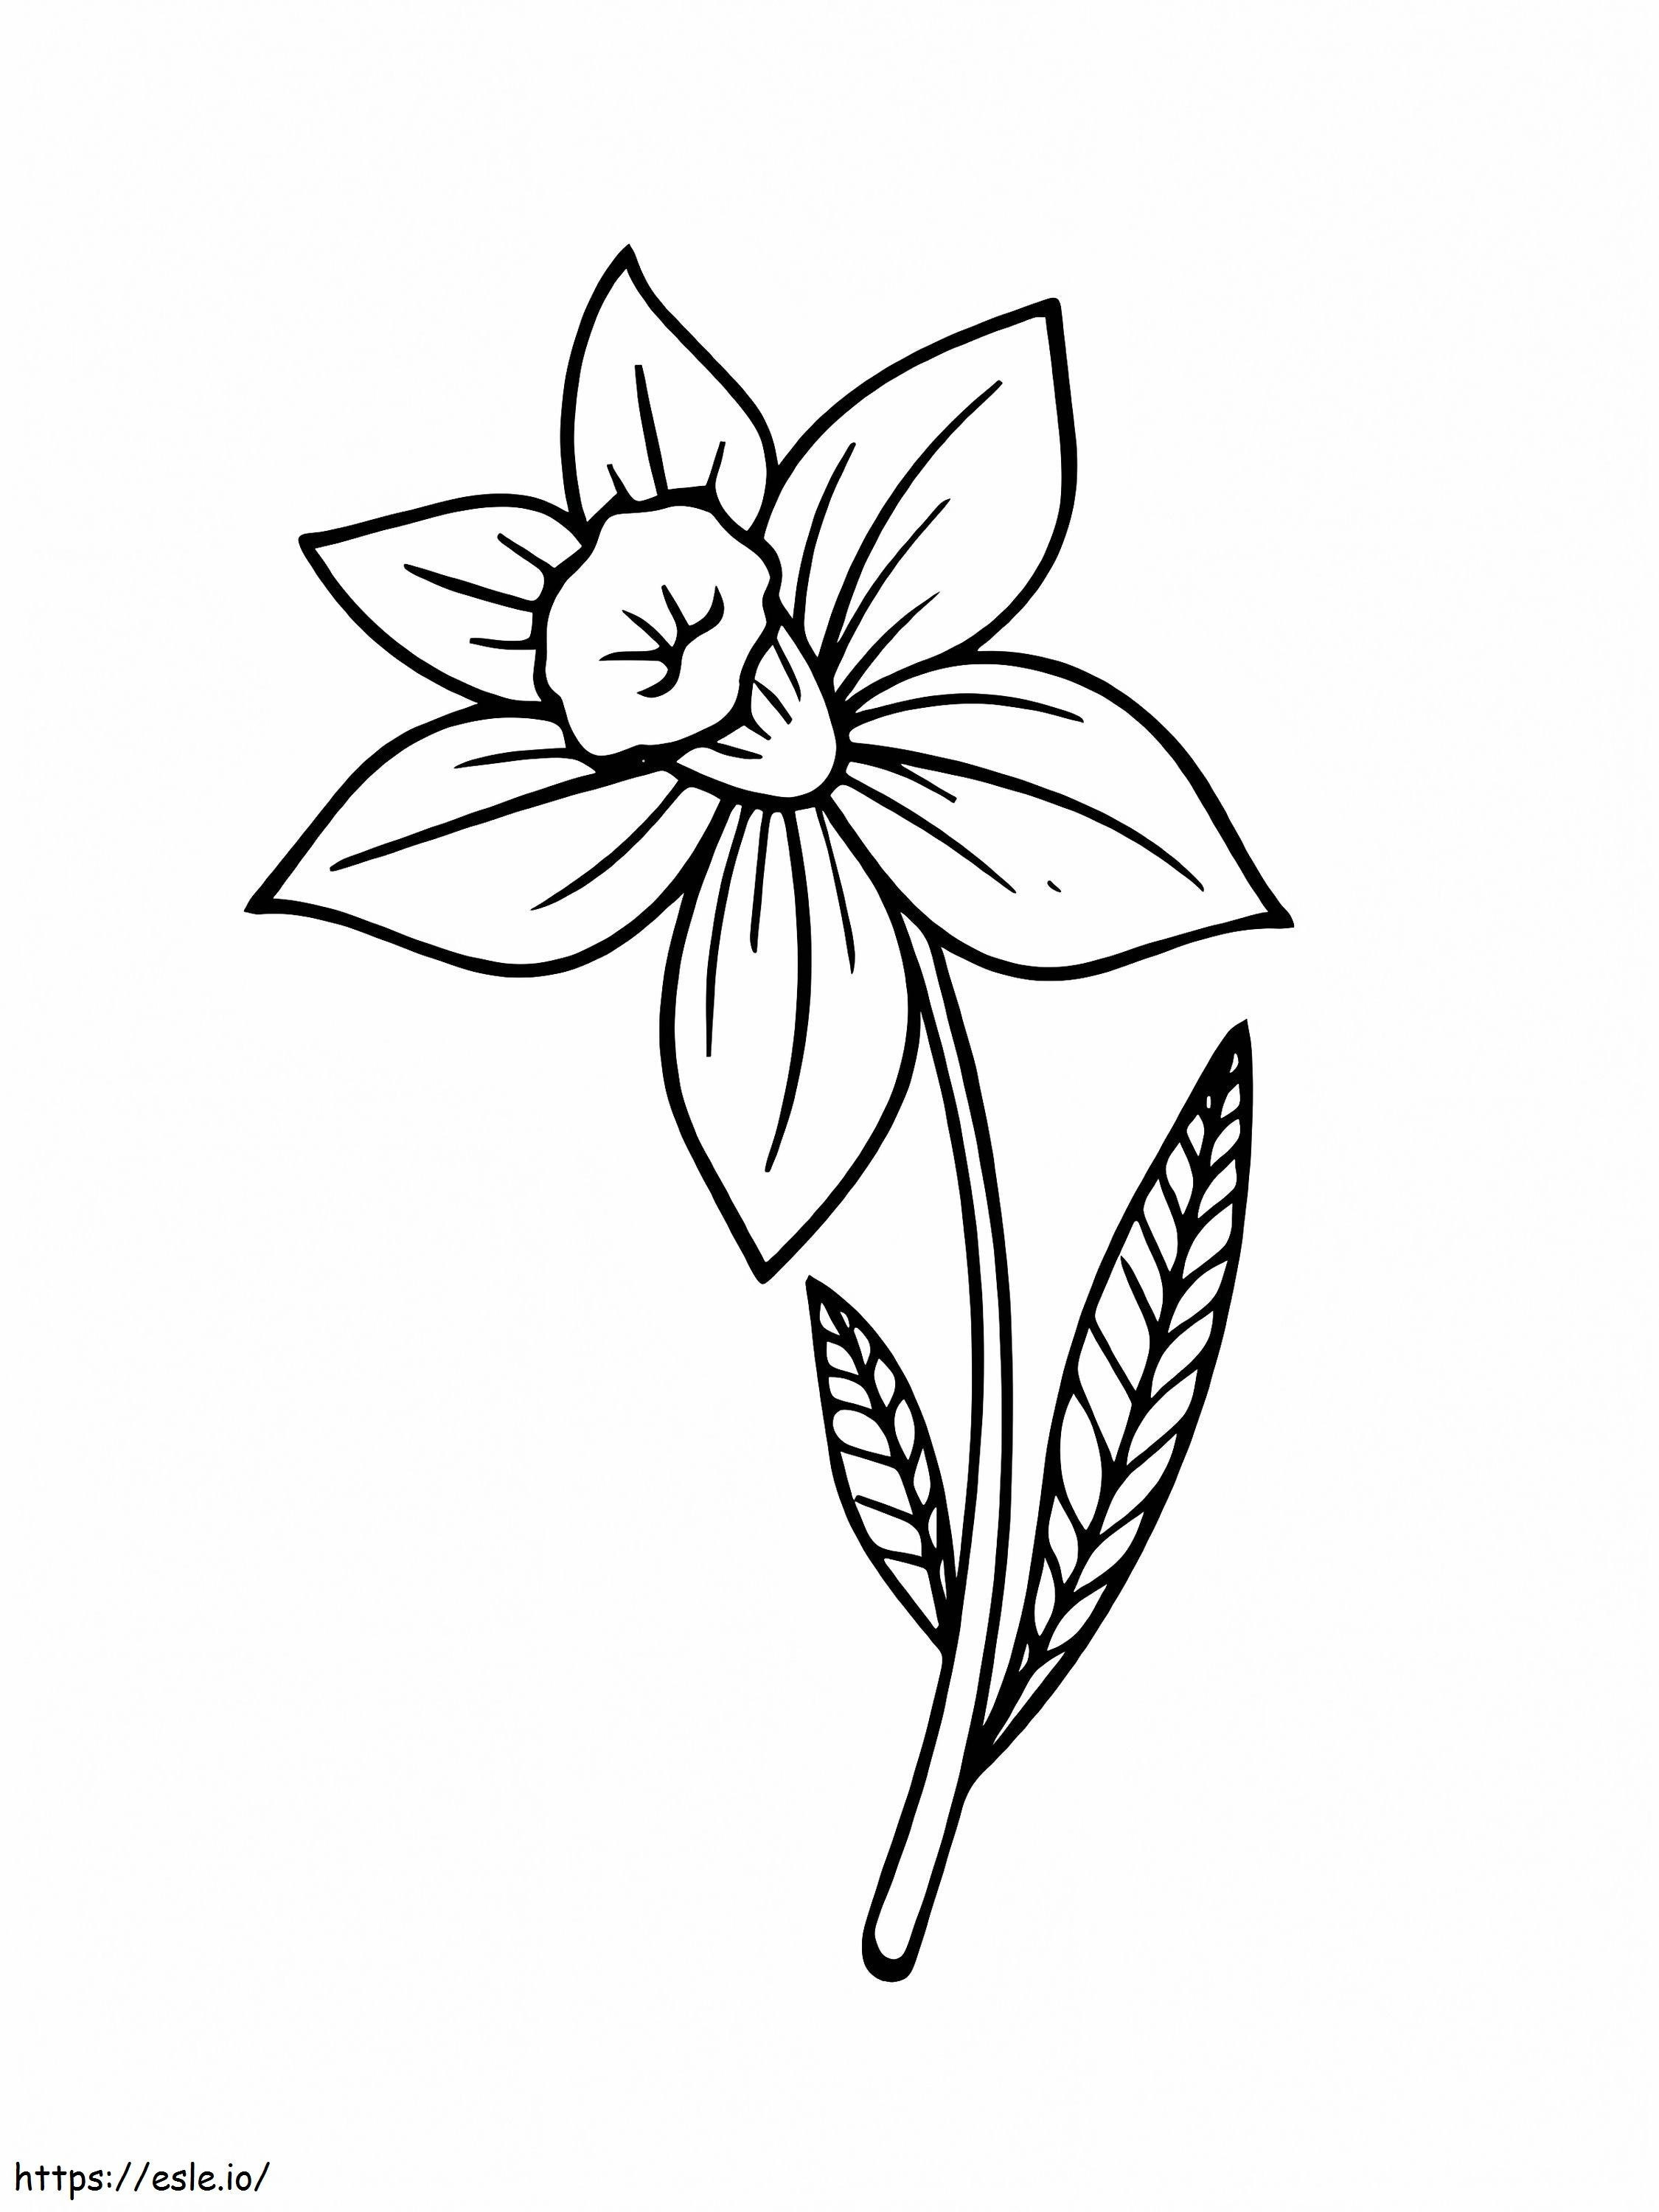 Floarea Narcisei de colorat